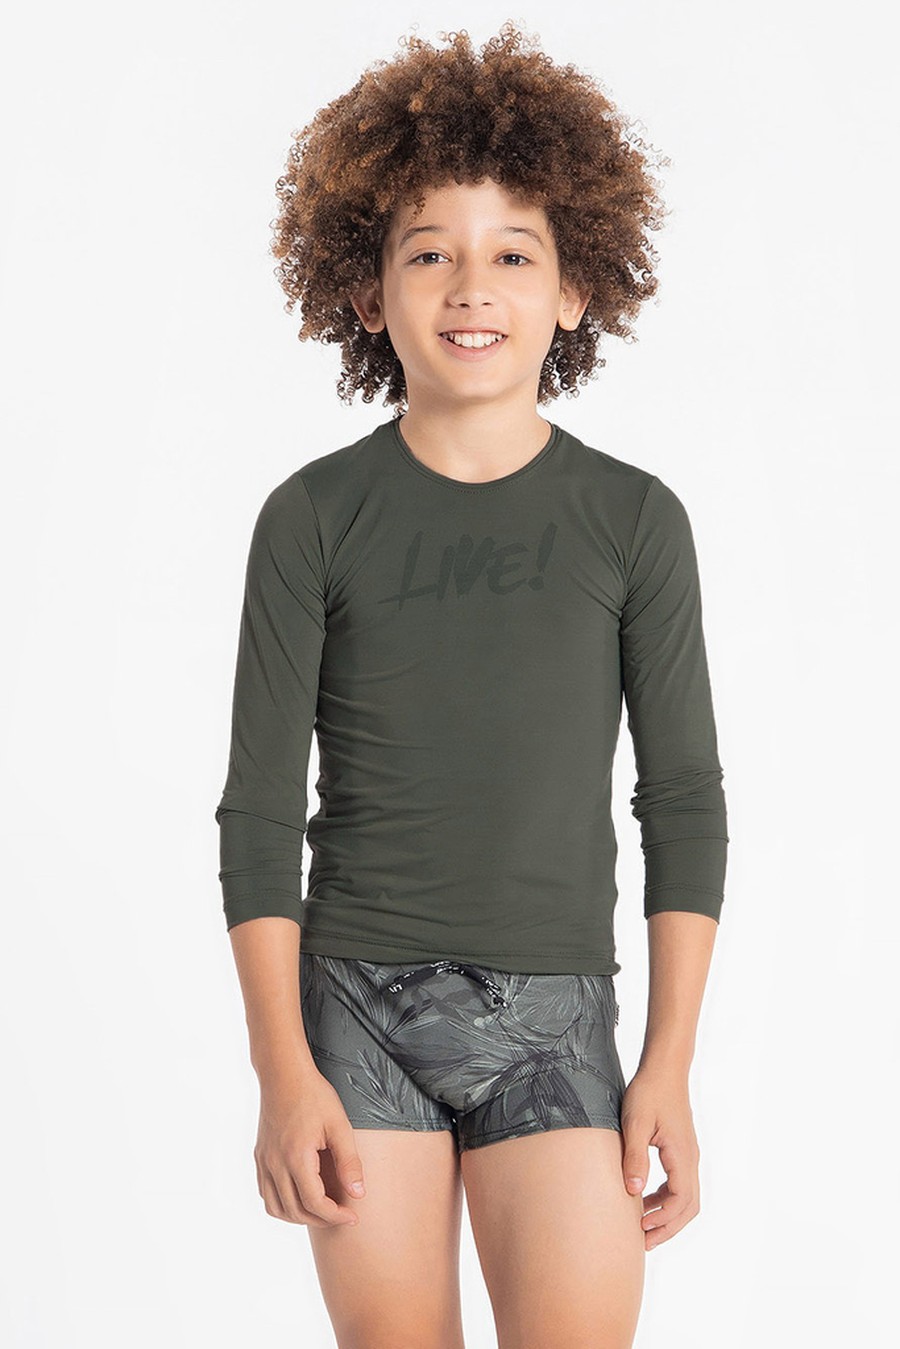 blusa infantil verde militar BC887 live